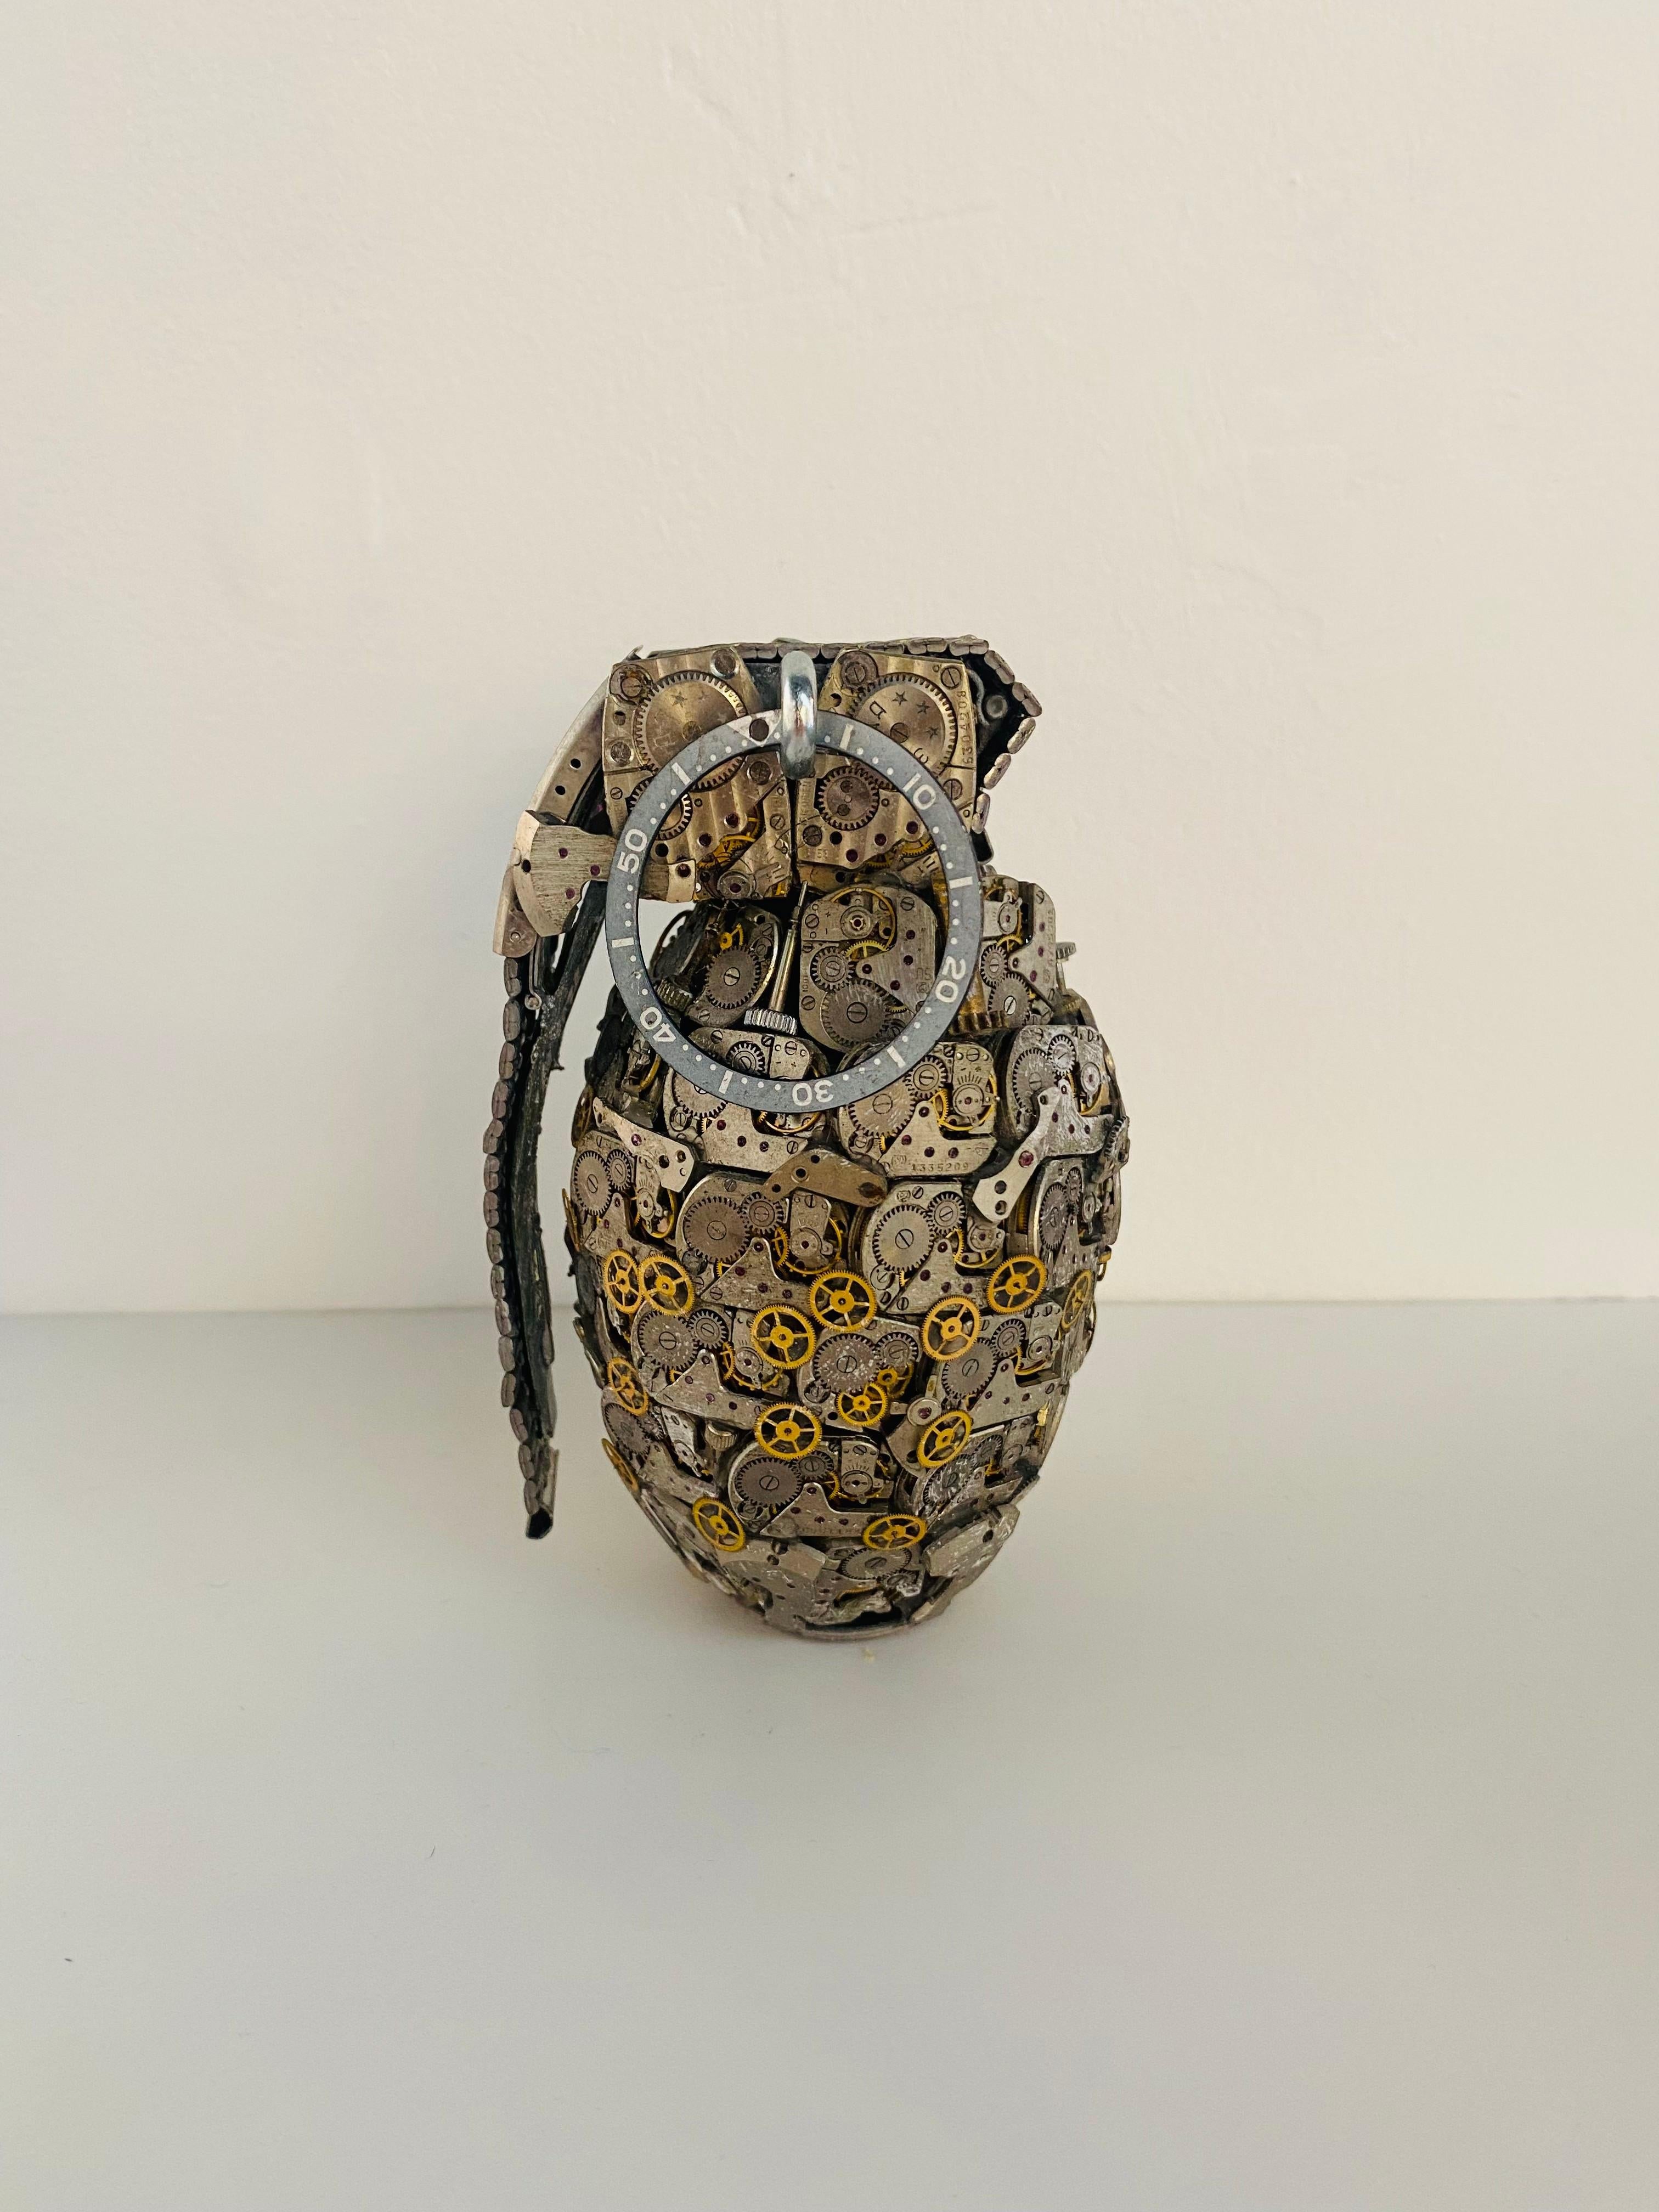 Dan Tanenbaum Abstract Sculpture - Time Bomb Grenade